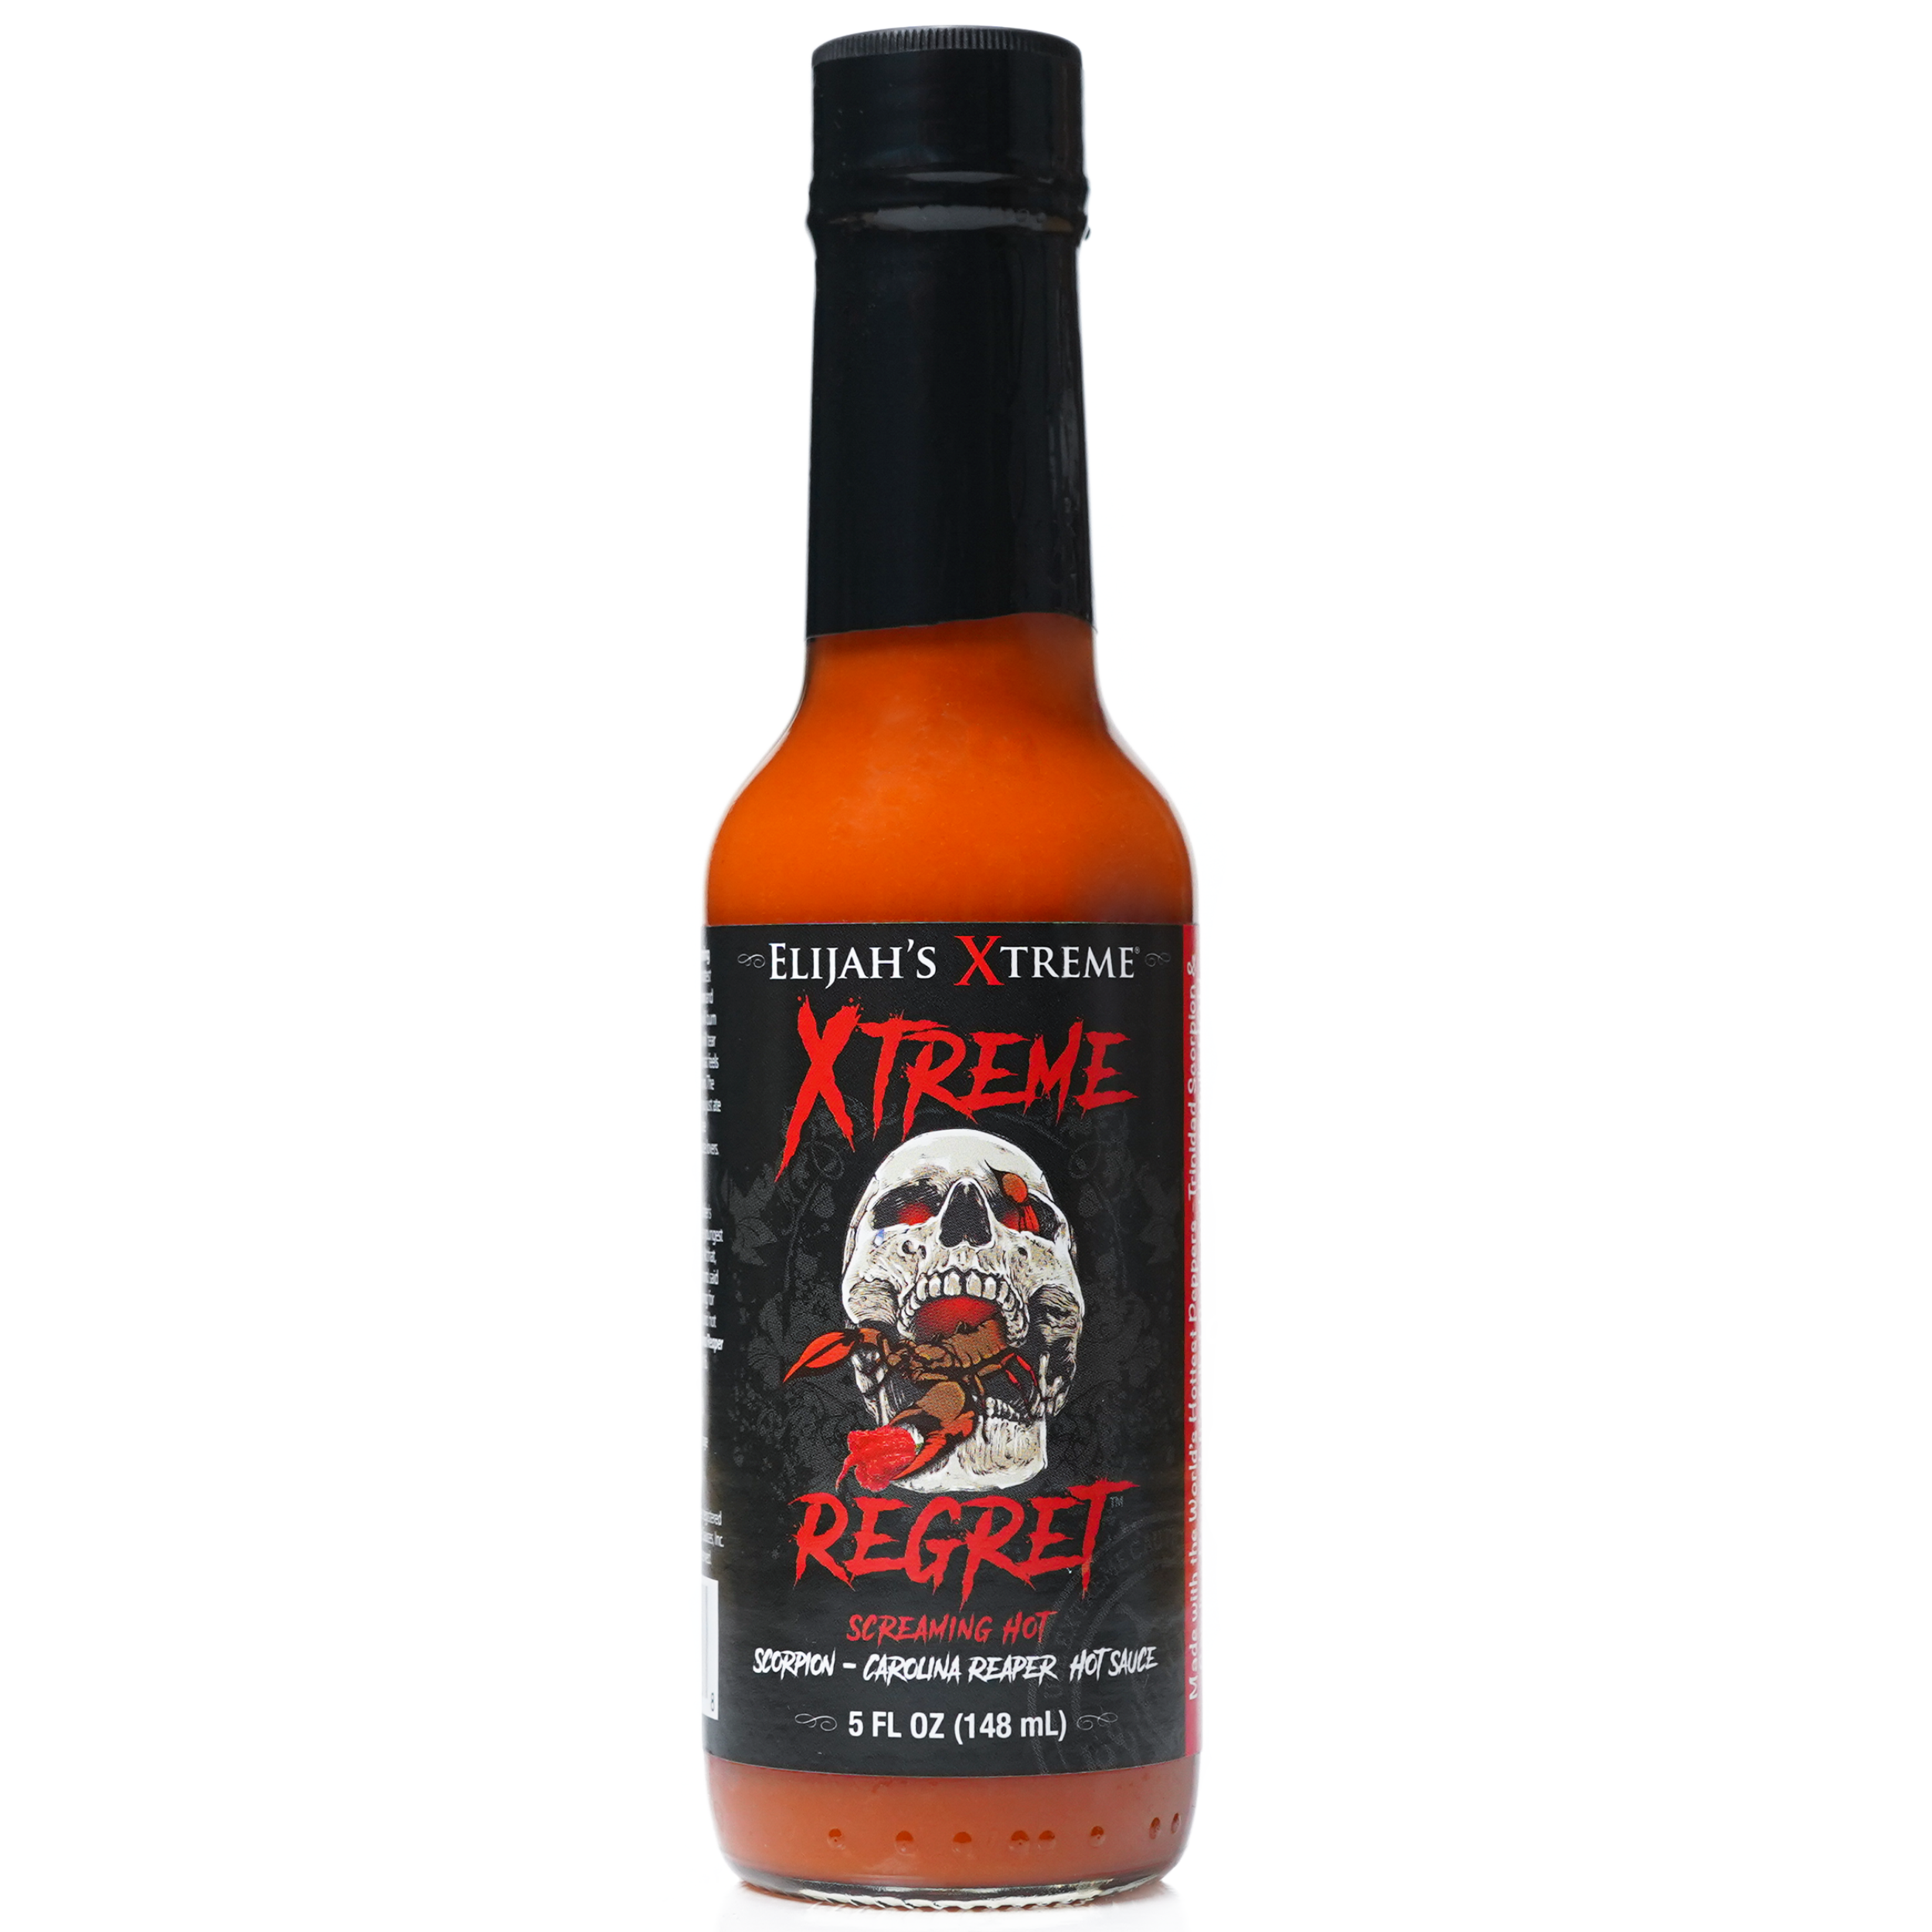 Pain is Good Louisiana Style Hot Sauce - Hot Sauce Lover